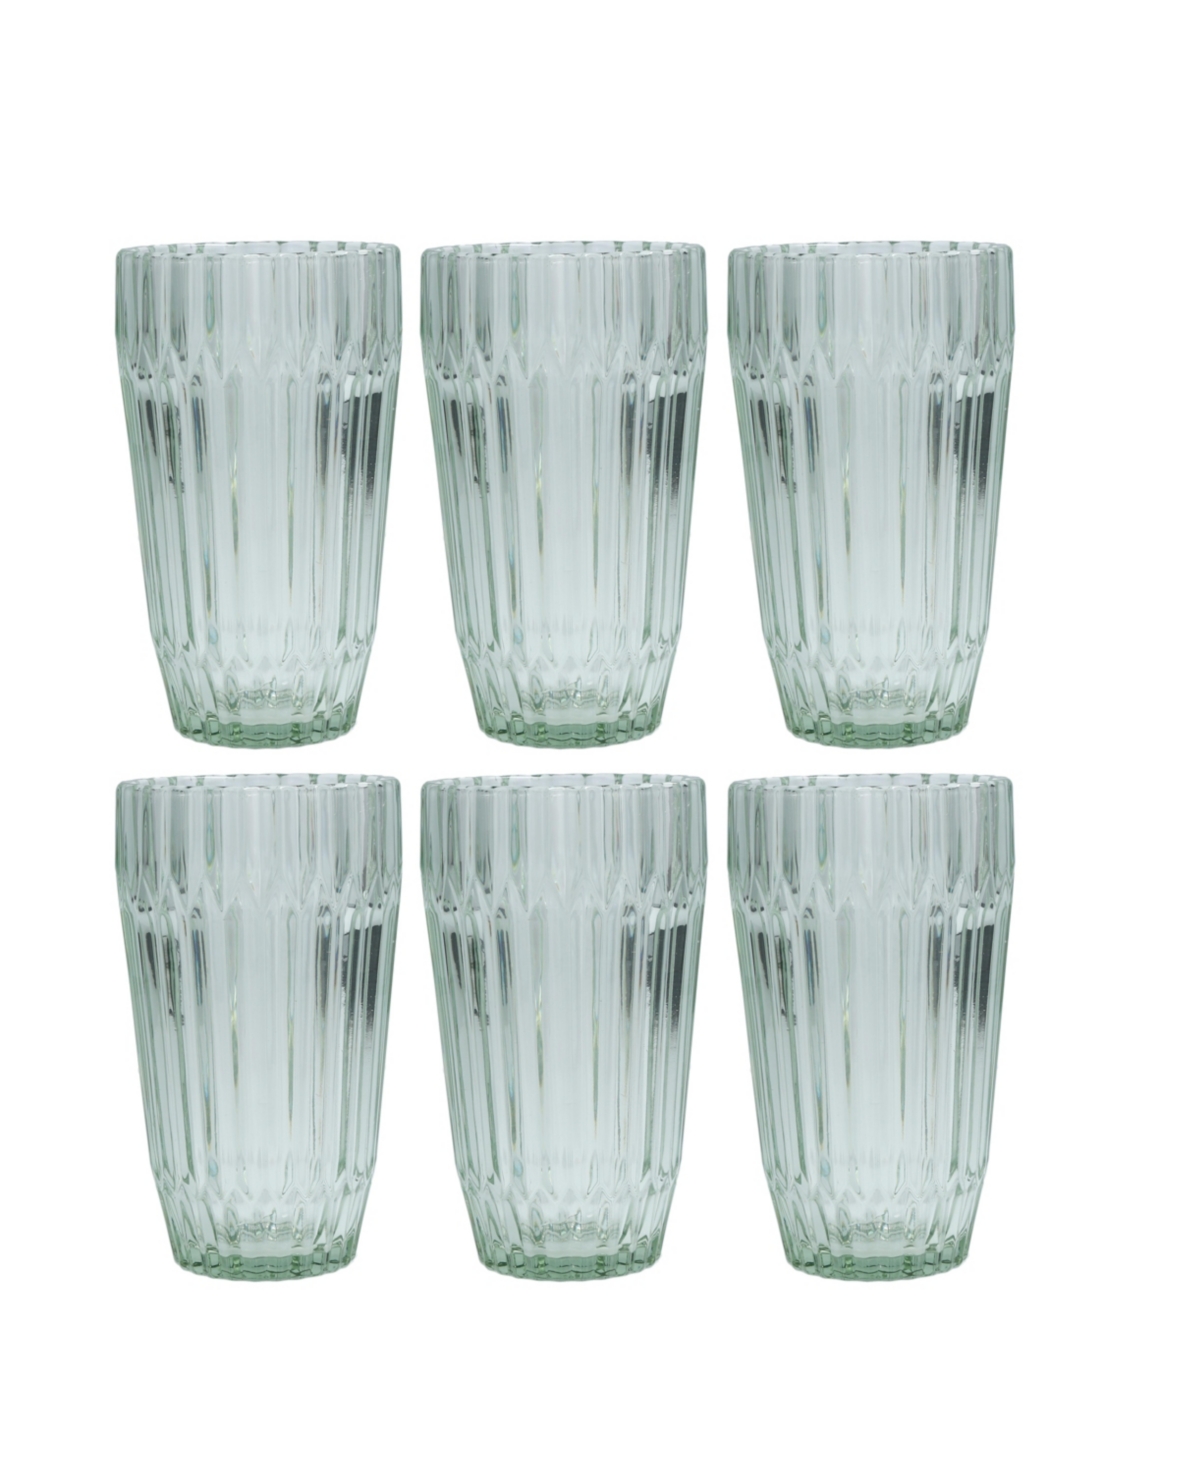 FORTESSA ARCHIE 14.8OZ, SET OF 6 ICED BEVERAGE GLASSES